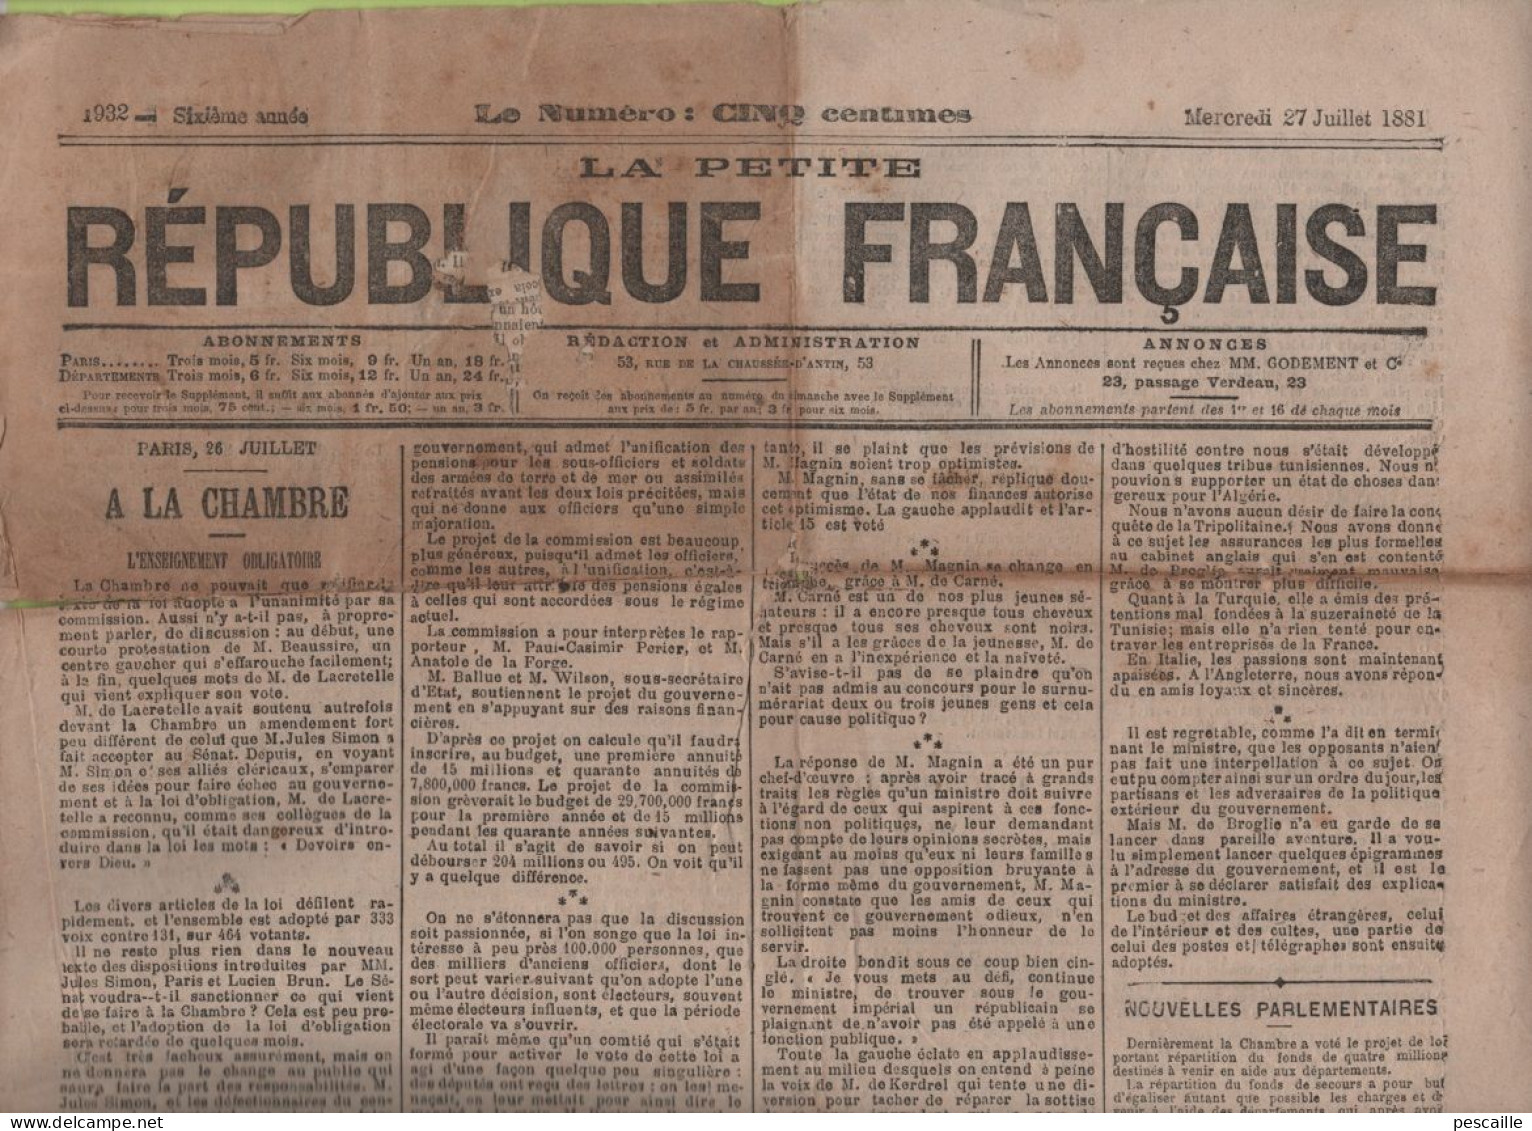 LA PETITE REPUBLIQUE FRANCAISE 27 07 1881 - ENSEIGNEMENT OBLIGATOIRE - BUDGET - PREFET DE POLICE - TUNISIE - ALGERIE - - 1850 - 1899